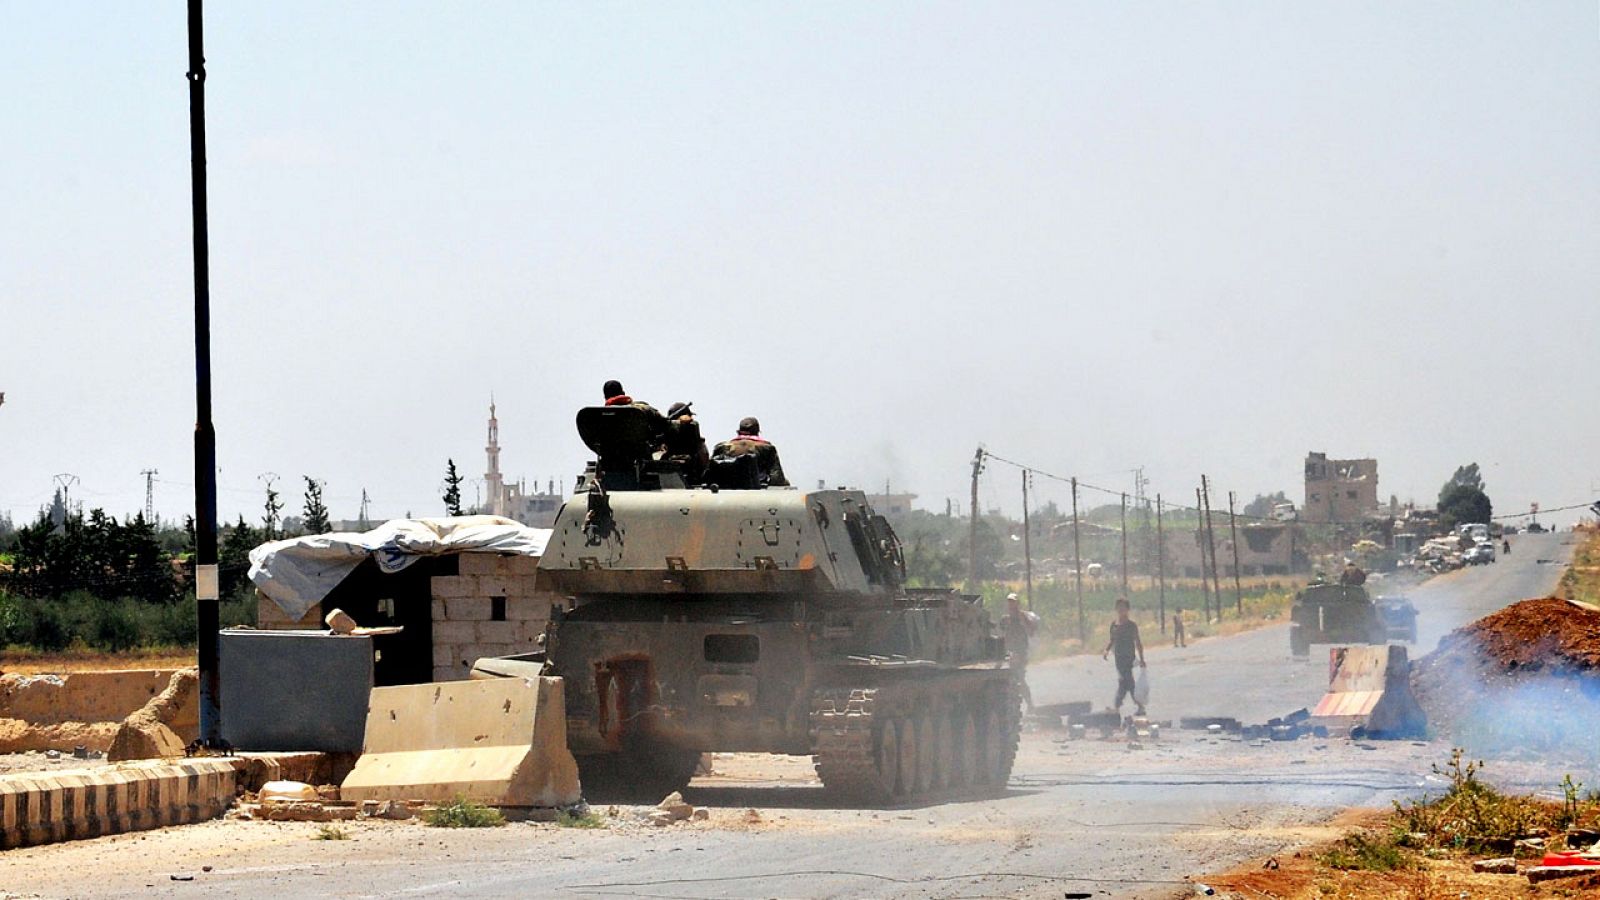 Las fuerzas gubernamentales de Siria entran en la ciudad de Deraa, tras la rendición de los rebeldes